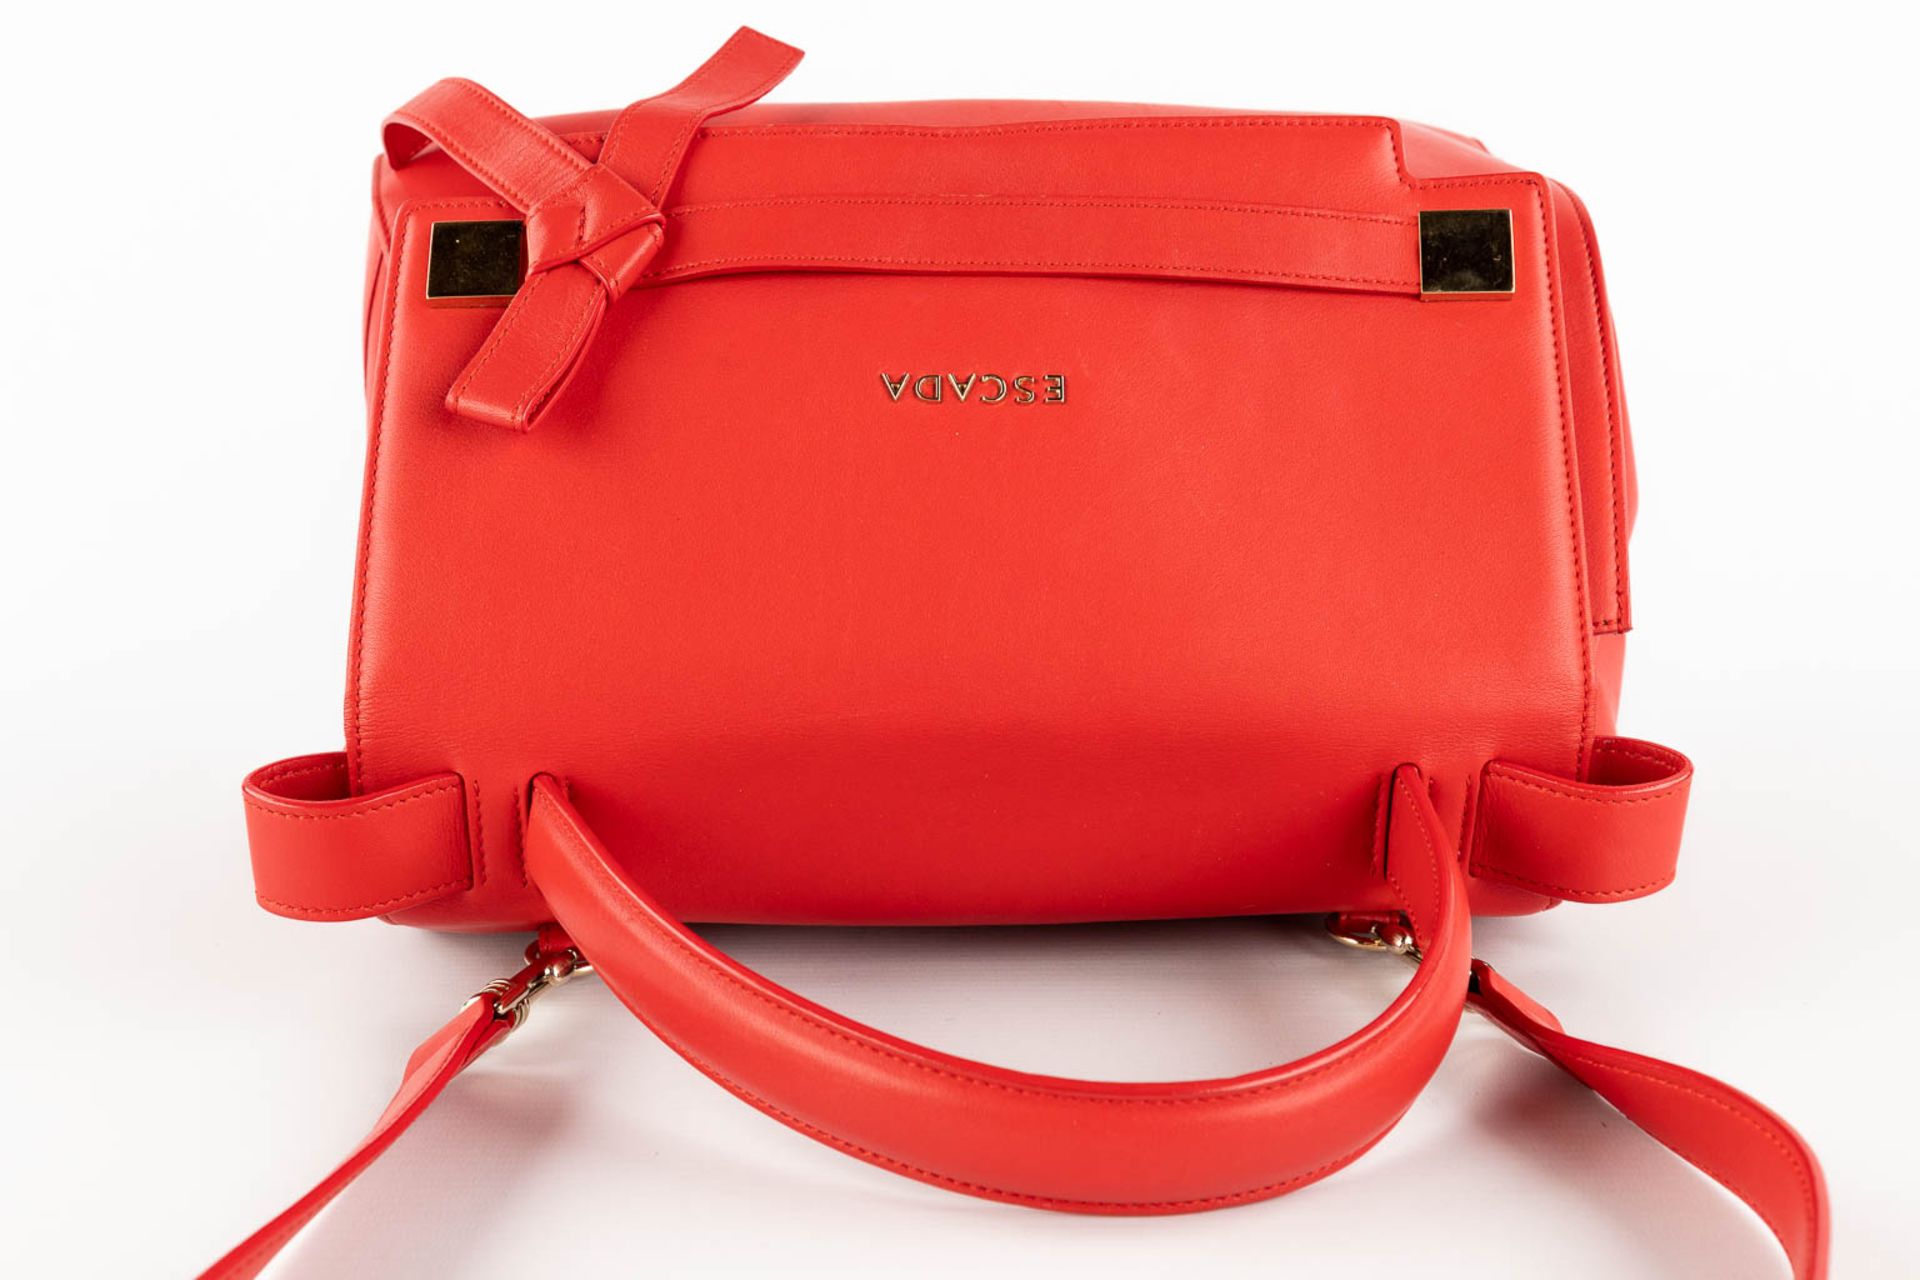 Escada, a handbag made of red leather. (W:33 x H:28 cm) - Image 9 of 17